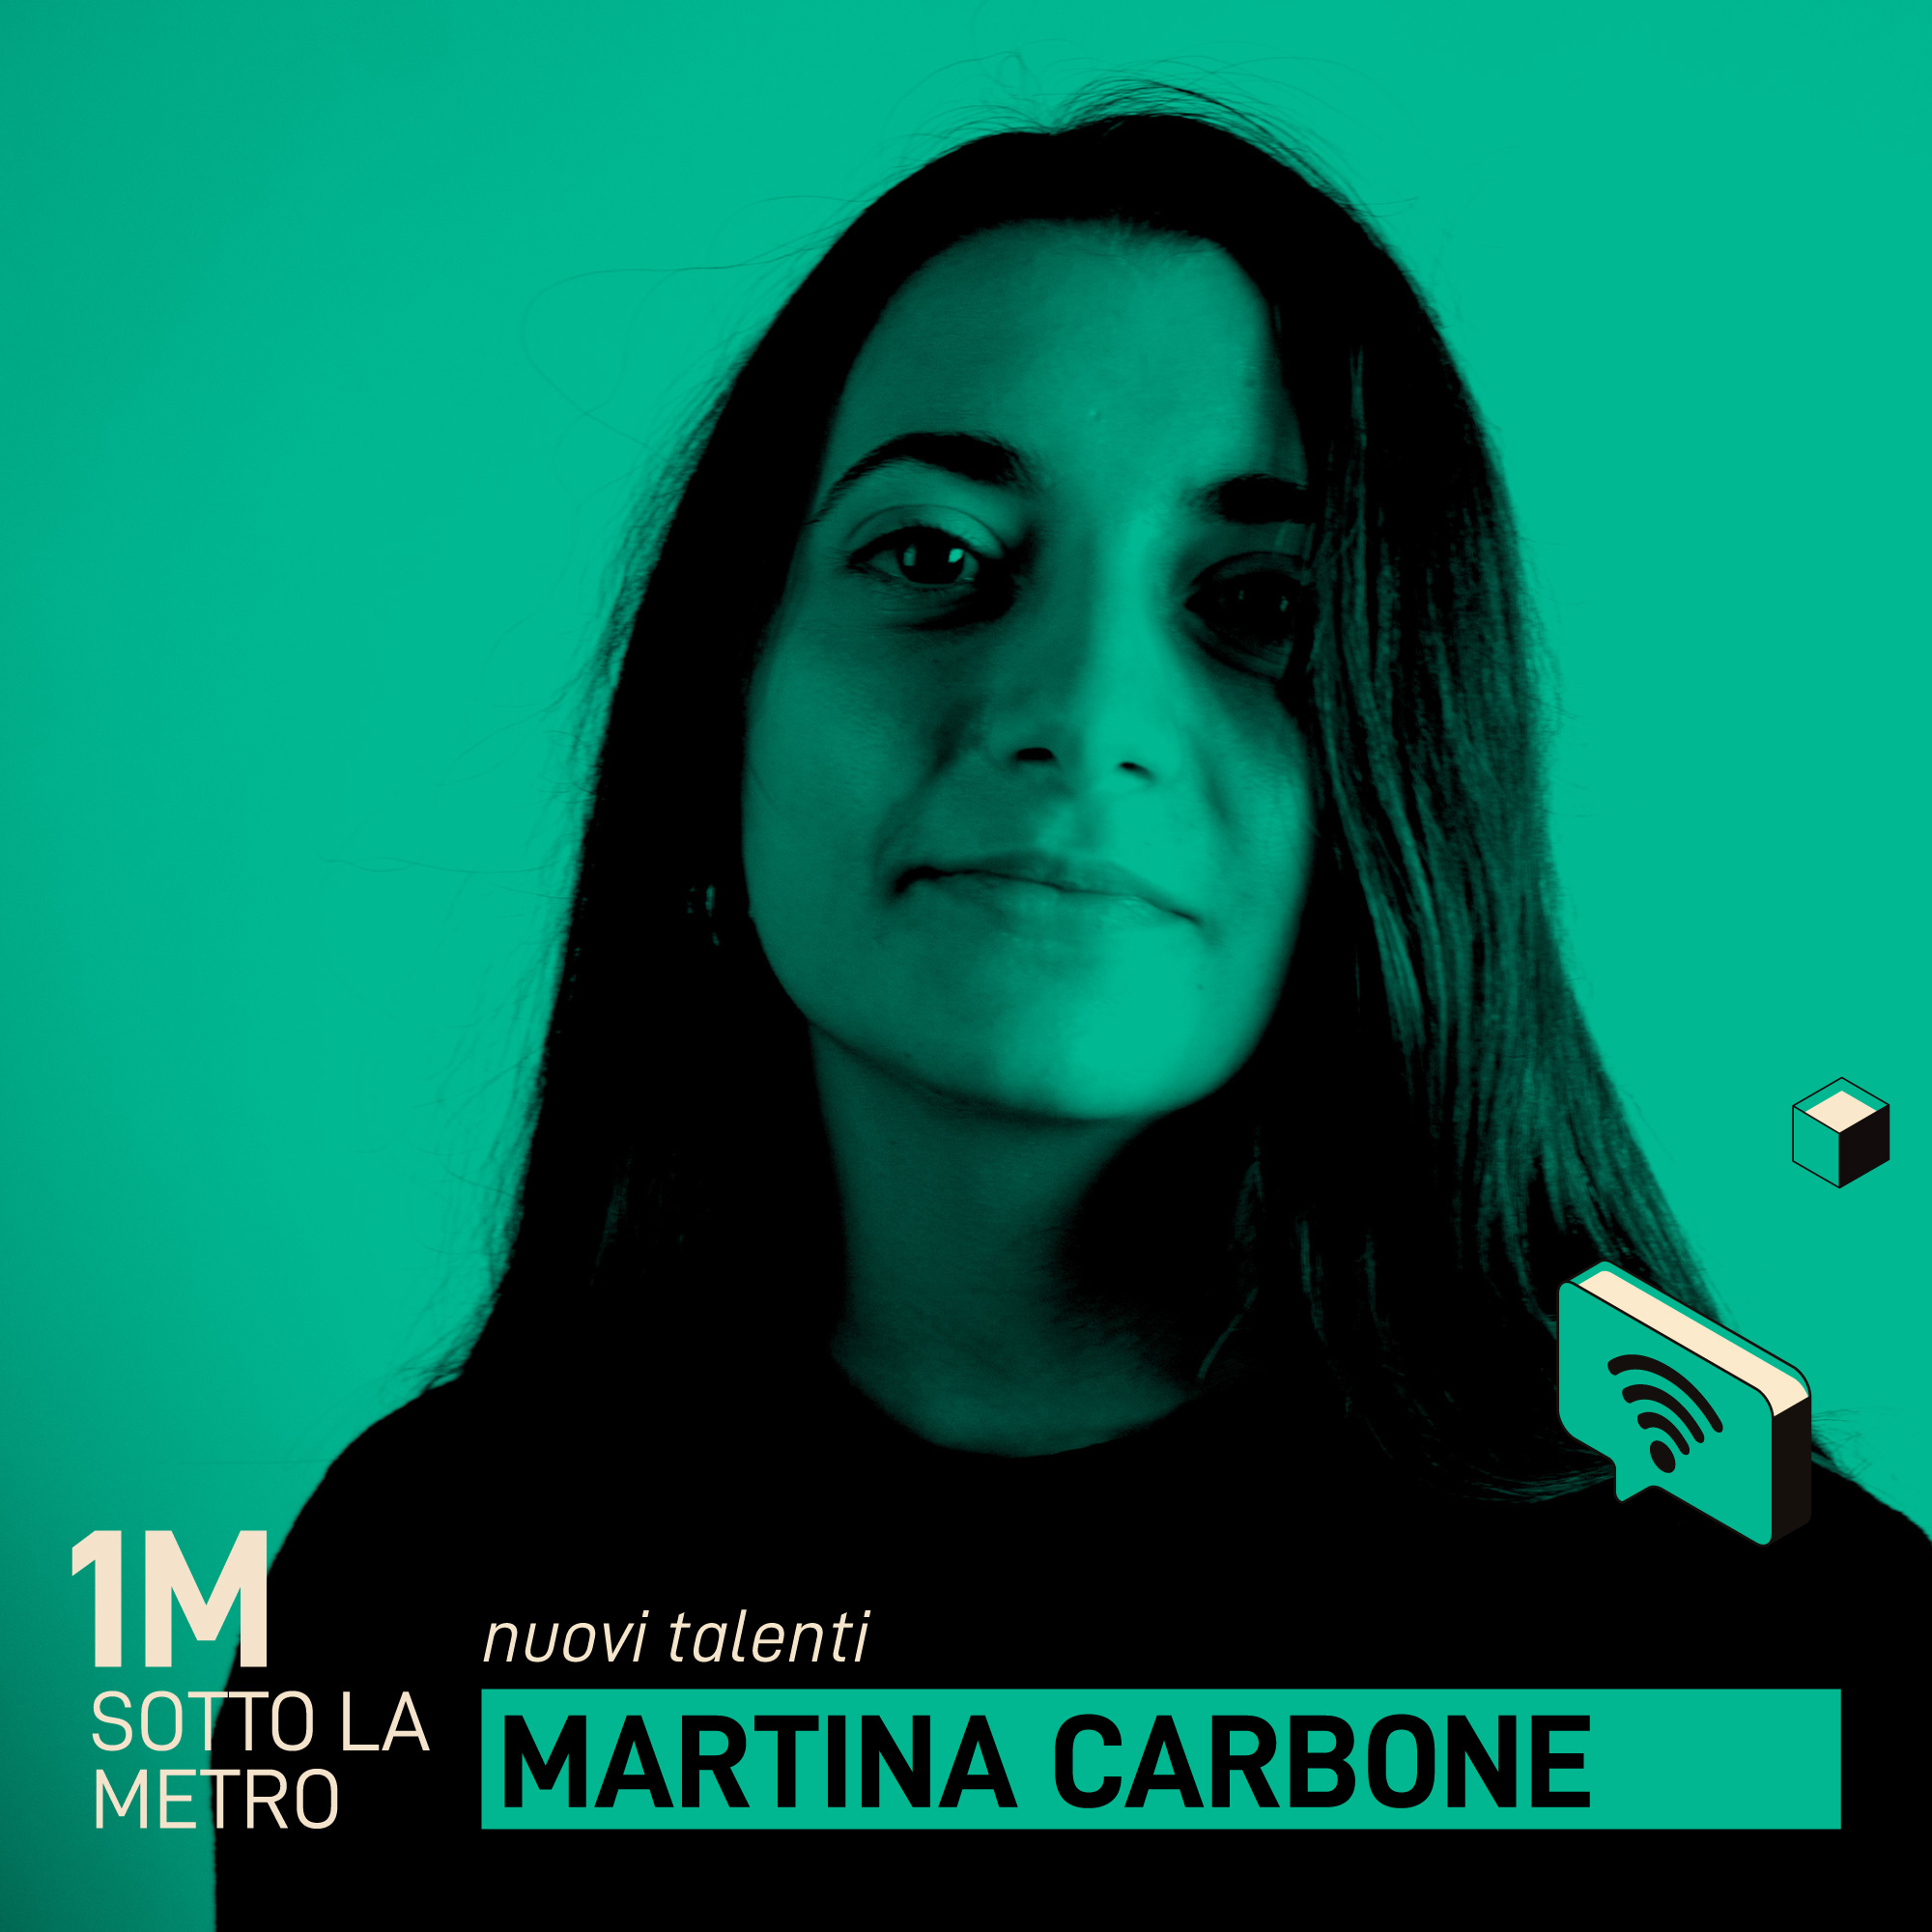 Martina Carbone